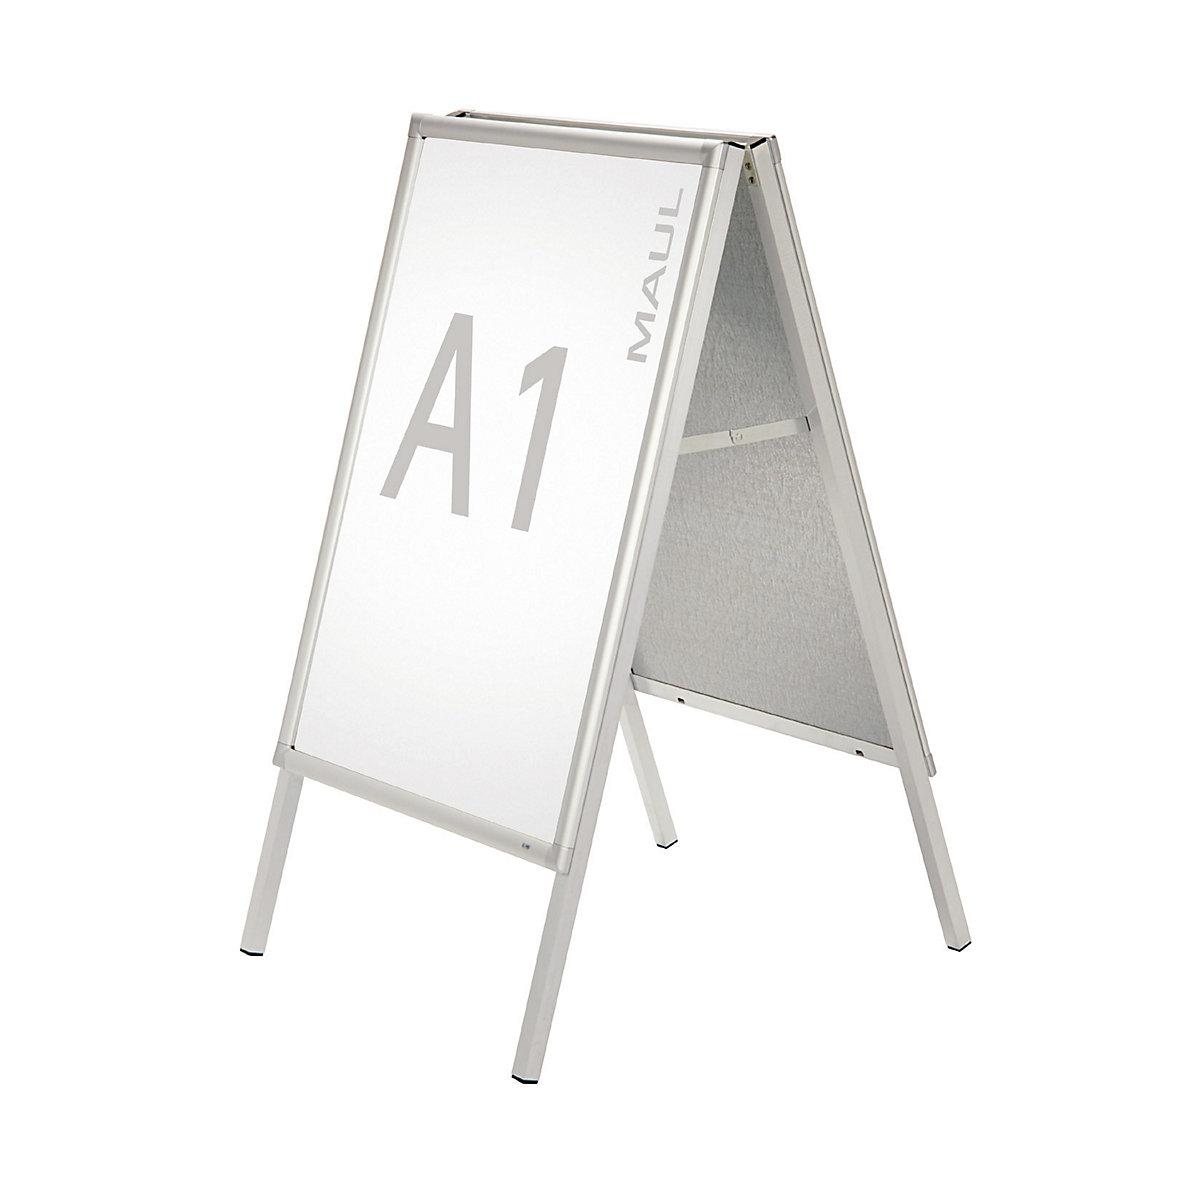 Présentoir publicitaire double face – MAUL, en aluminium résistant aux intempéries, pour format A1-4